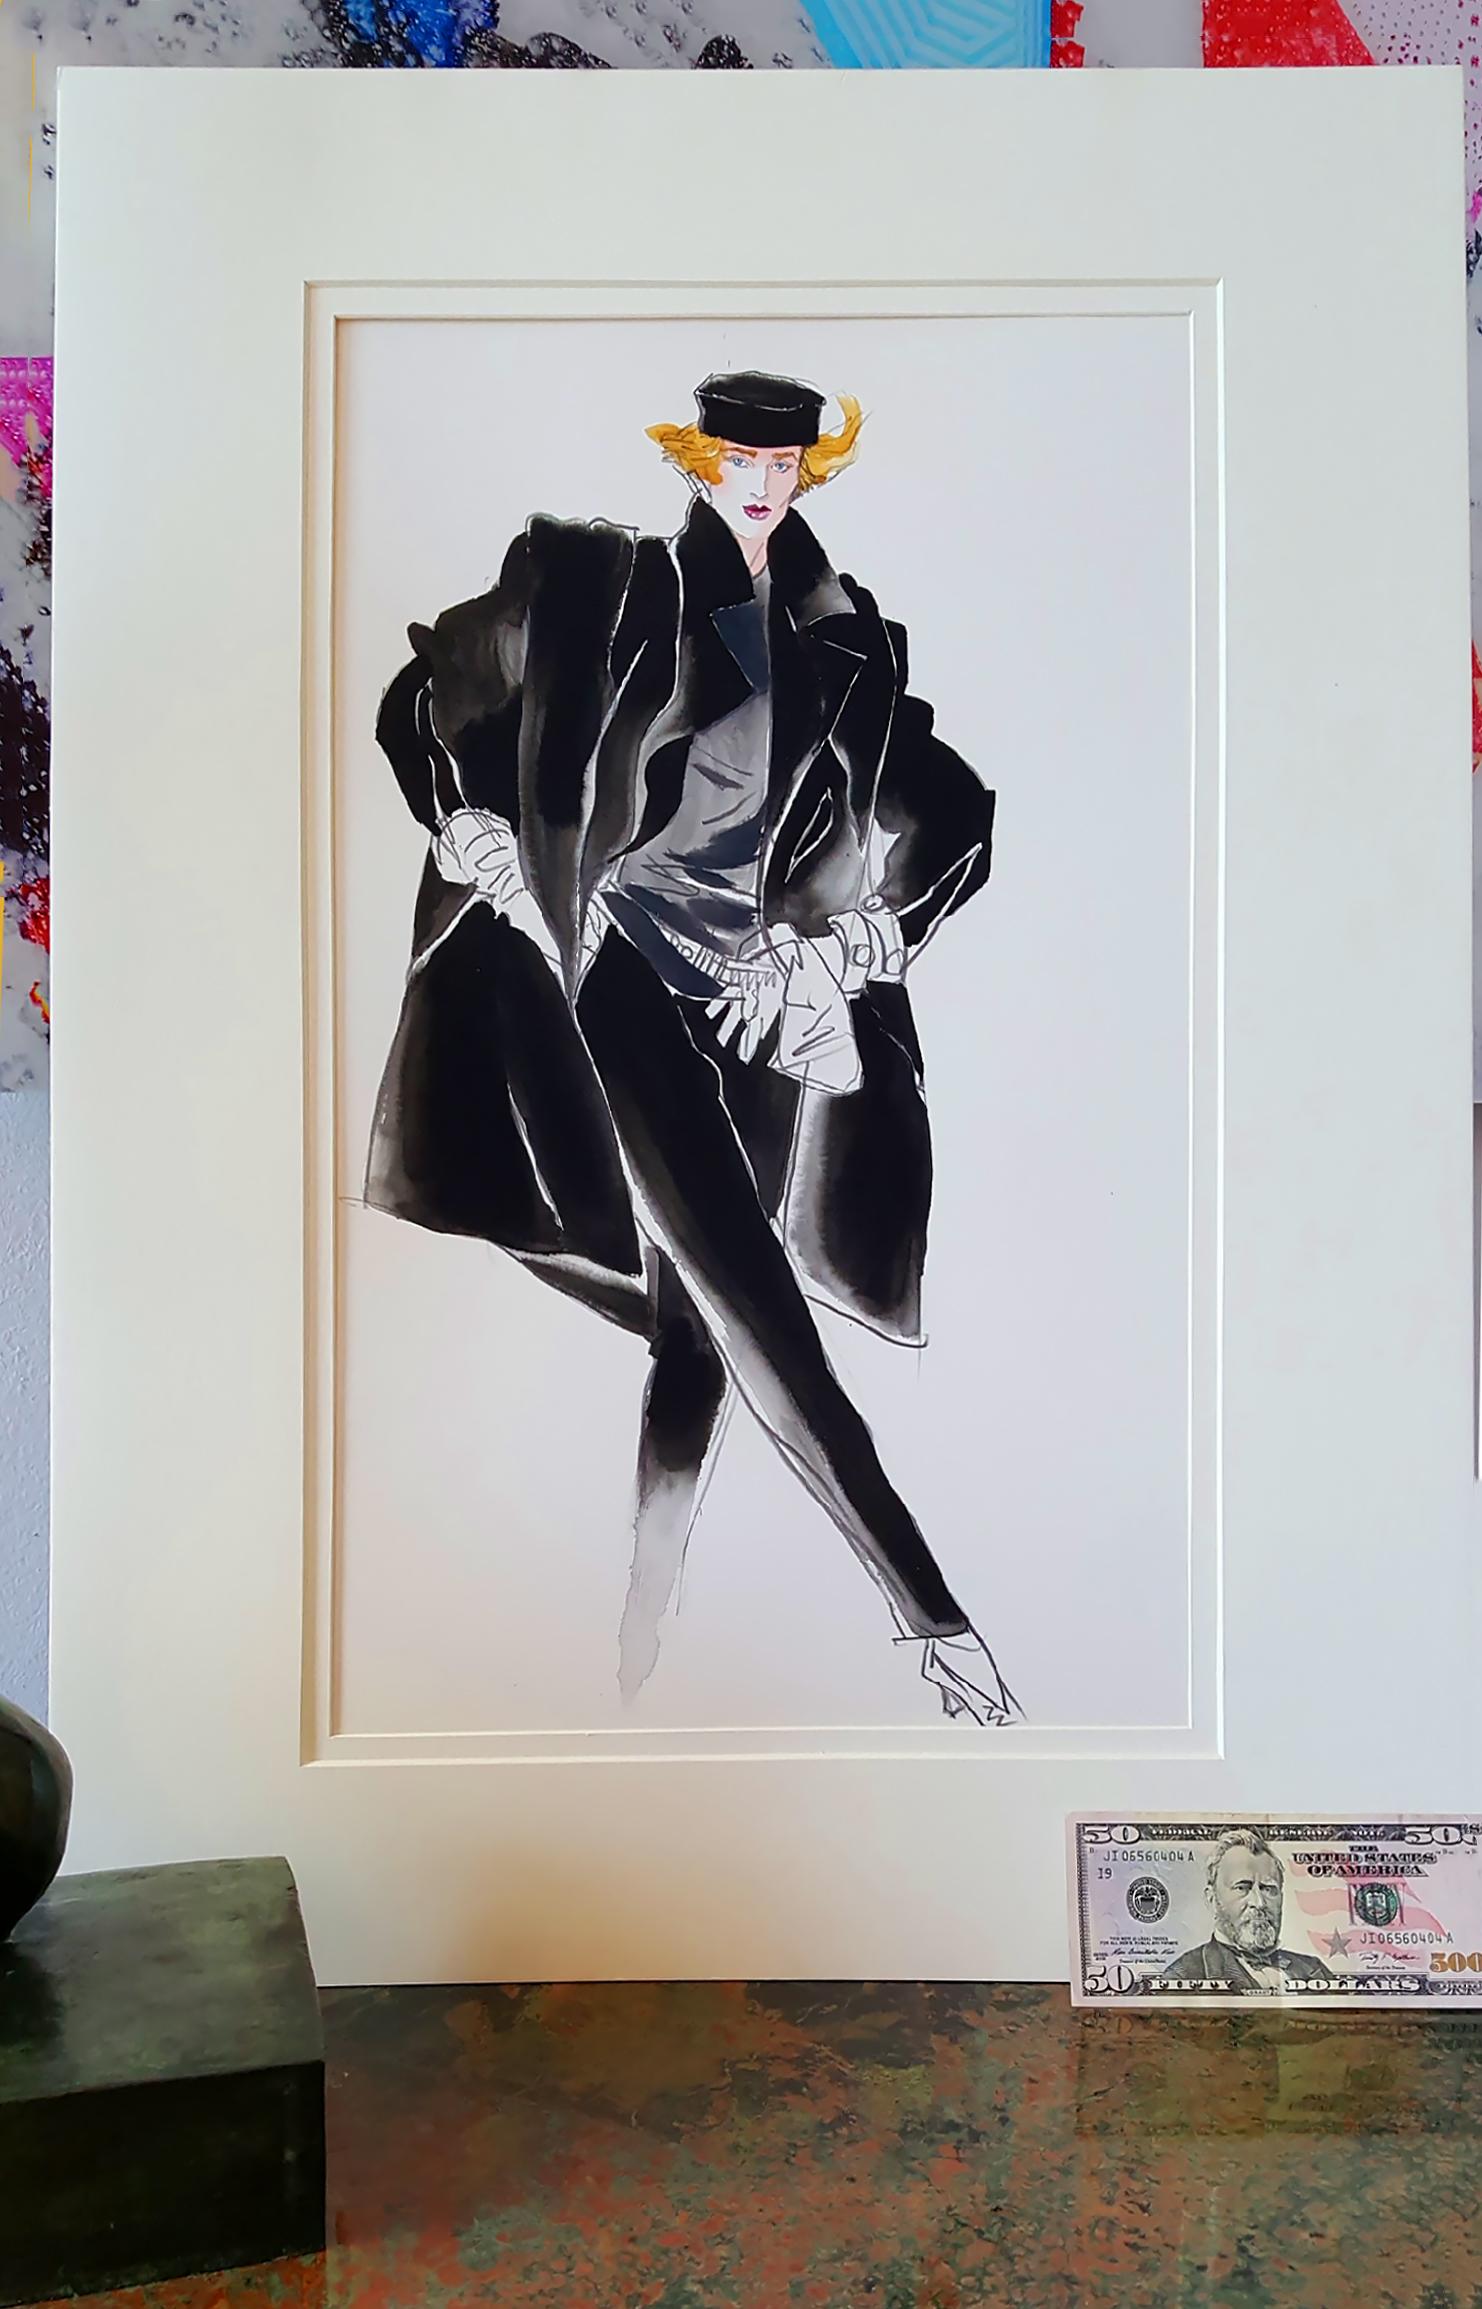 Vogue Magazin Mode-Illustration (Stephen Sprouse)
Antonio's reifer Stil ist in vollem Umfang zu sehen, und mit ein paar schnellen Pinselstrichen verkörpert er den Inbegriff von Stil und Klasse

Signatur: nicht signiert American Vogue, Juni 1984.